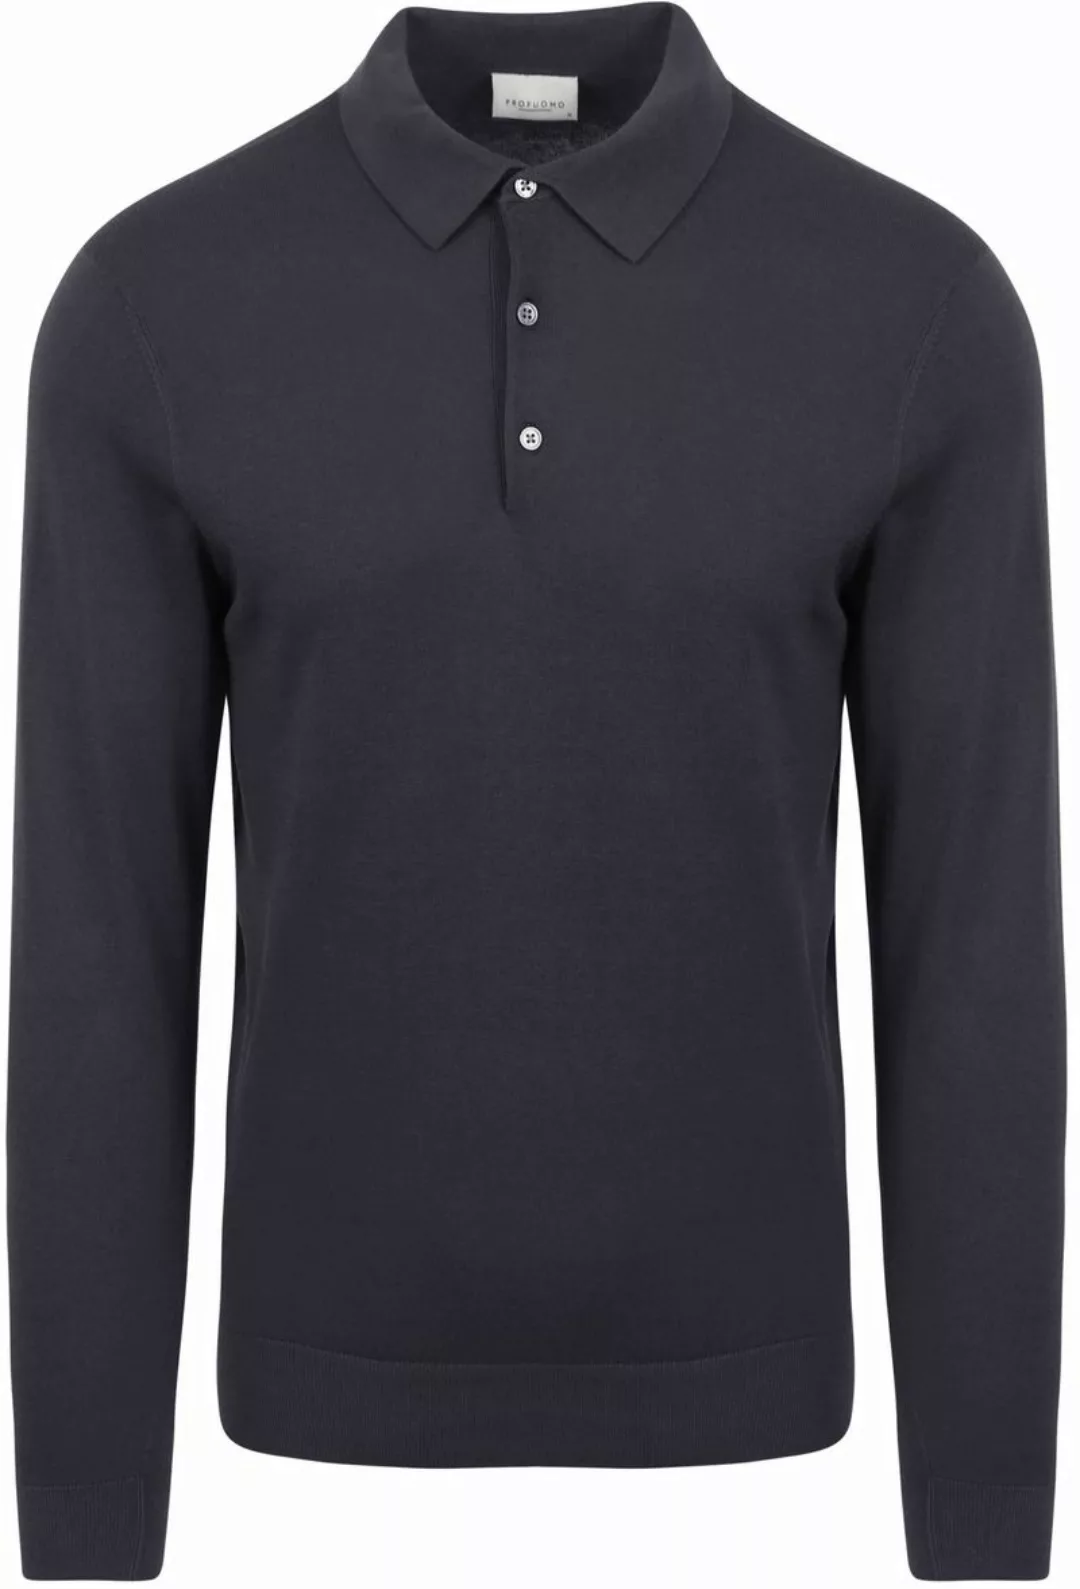 Profuomo Poloshirt Cool Cotton Navy - Größe XL günstig online kaufen